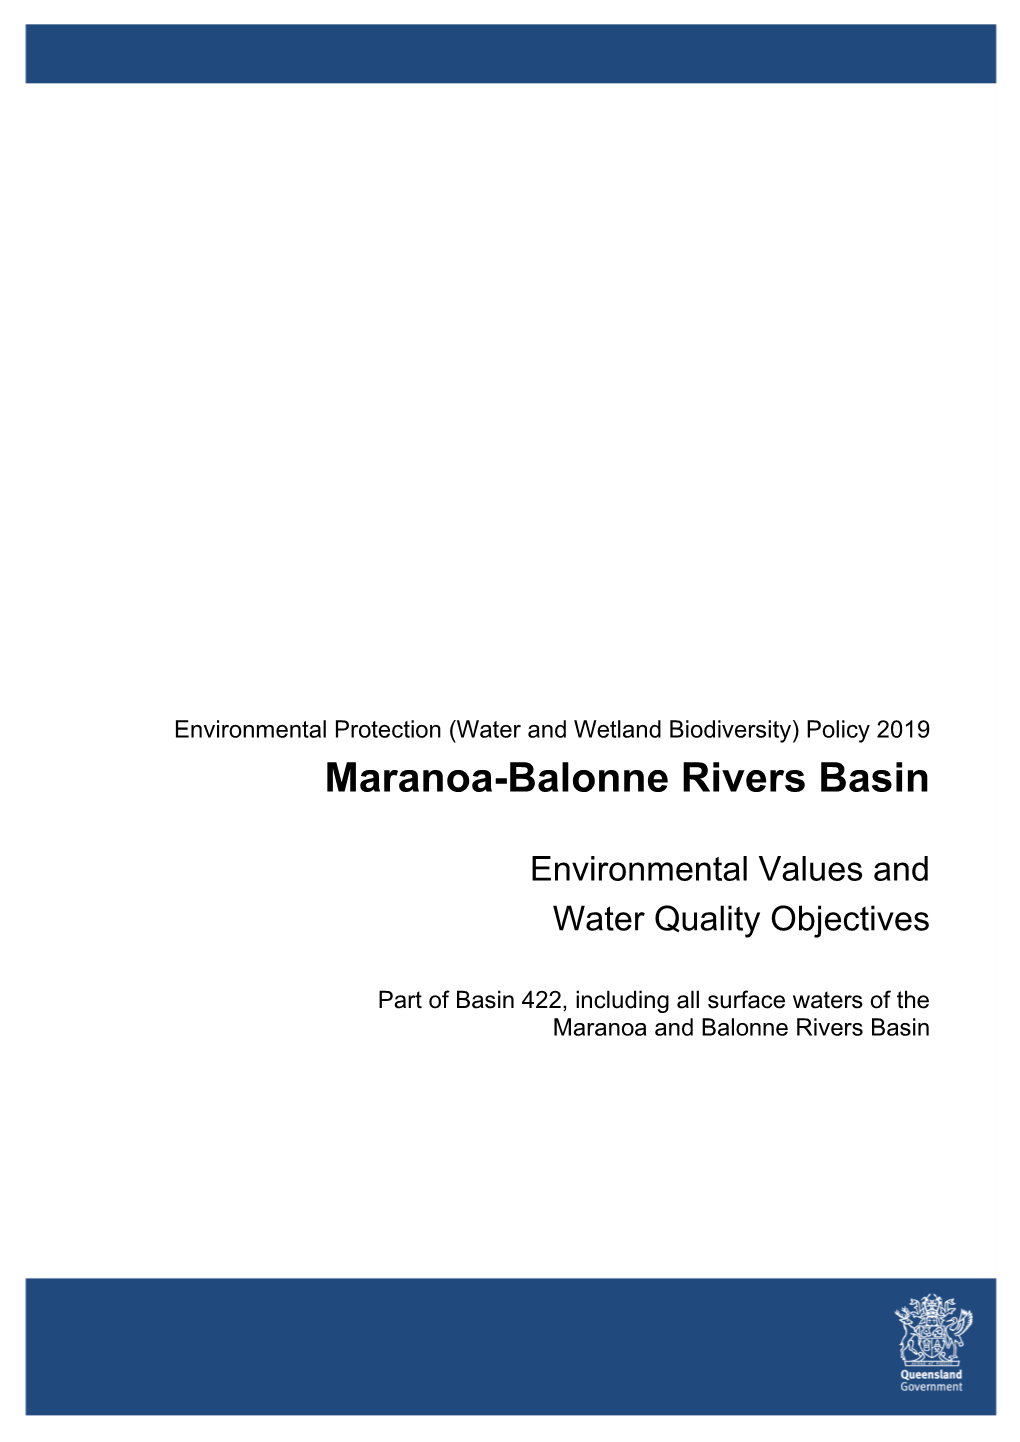 Maranoa-Balonne Rivers Basin